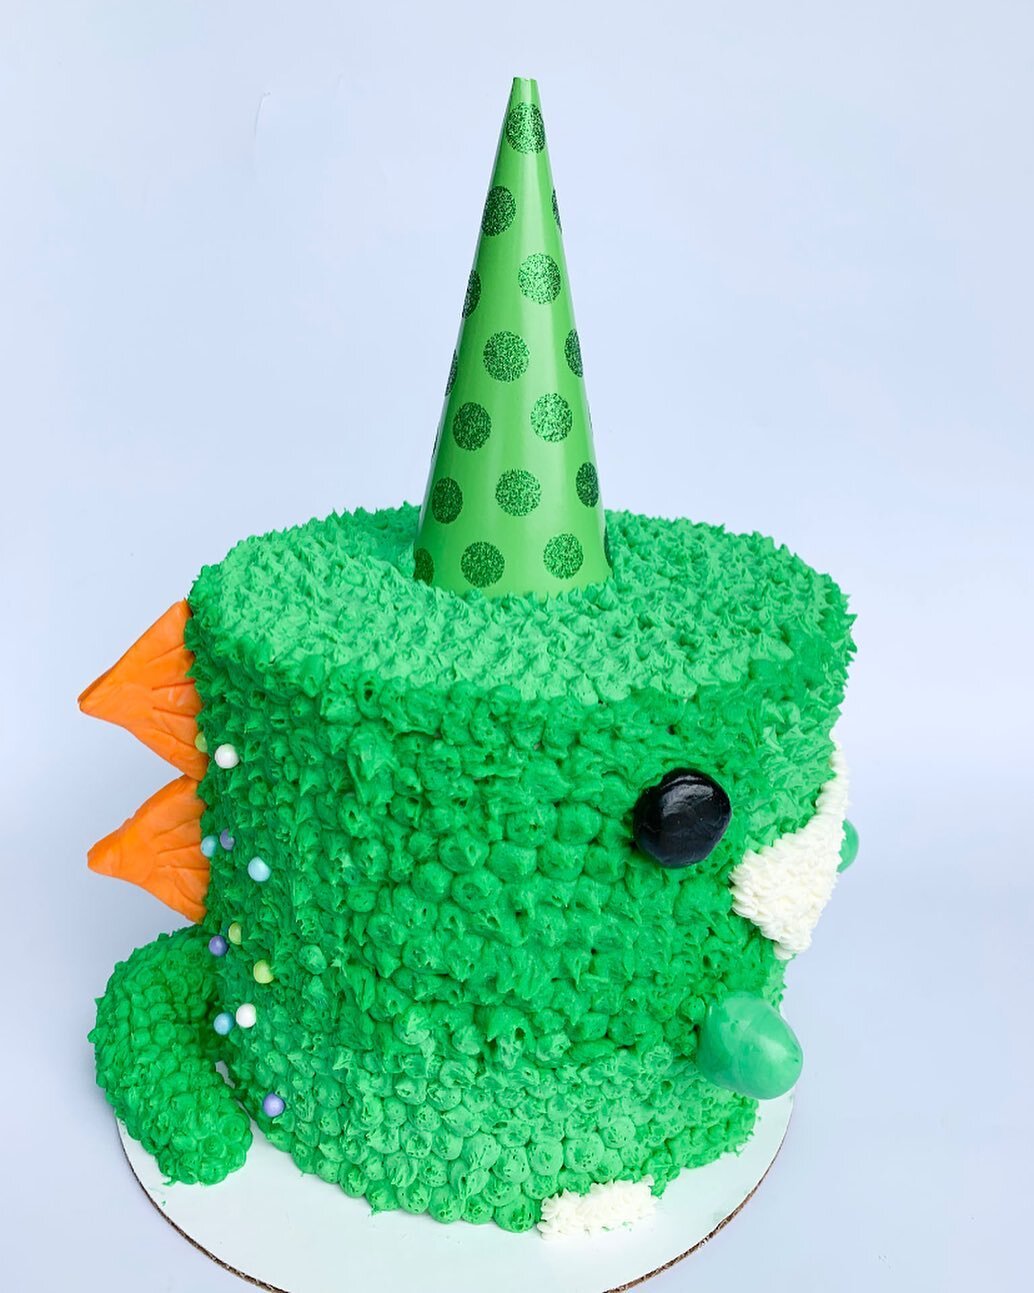 Sweet Dino Birthday Cake! 🦖 #birthdaycake #dinosaur #dinosaurcake #dino #cake #instacake #cakestagram #cakesecorating #trex #happybirthday #birthday